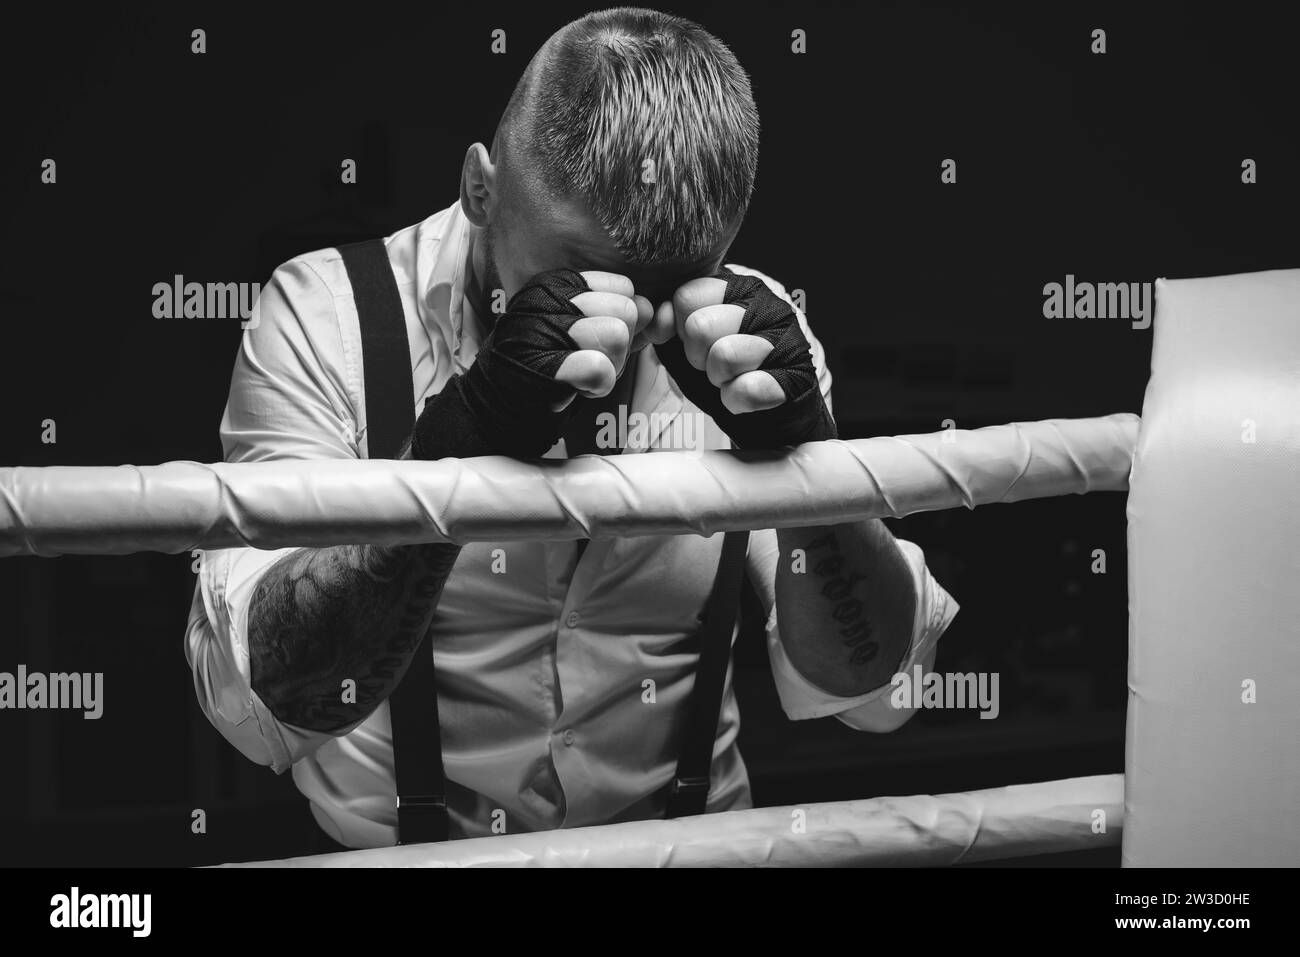 Image d'un homme brutal debout près des cordes de l'anneau. Il prie avant le combat. Le concept de combats de poing. Supports mixtes Banque D'Images